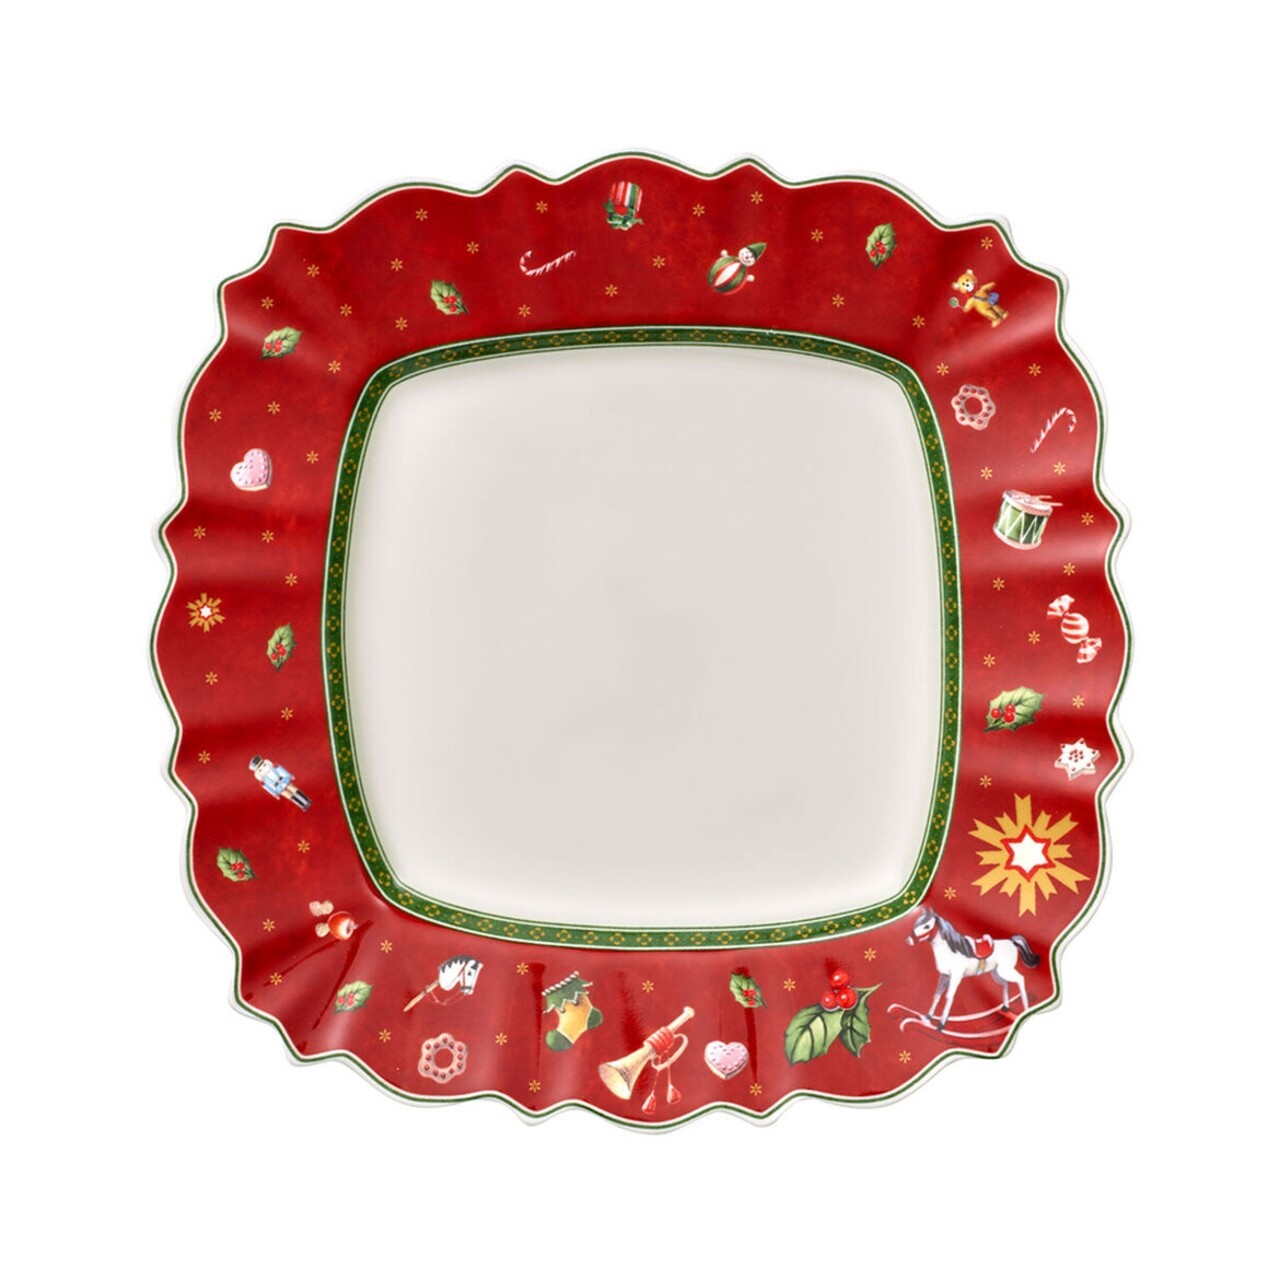 Piros porcelán tányér karácsonyi motívummal, 28 x 28 cm - Villeroy & Boch